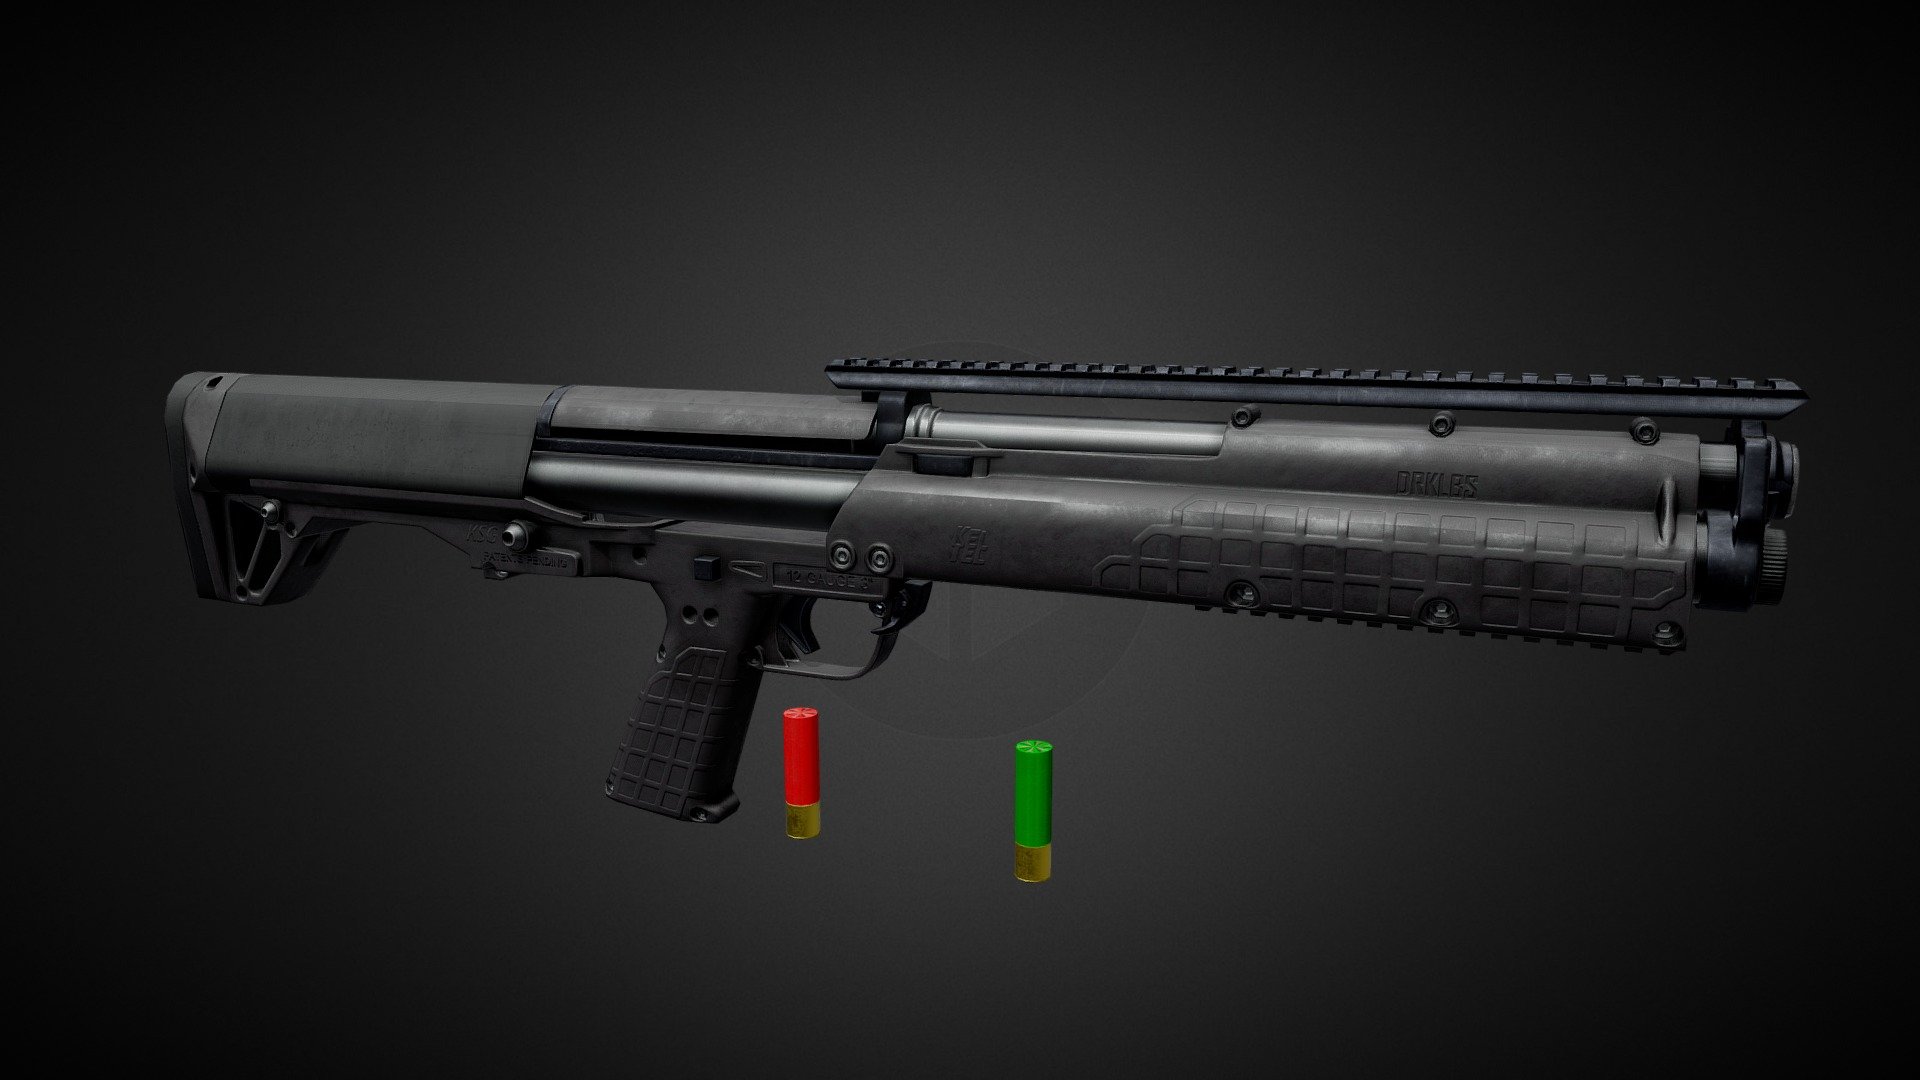 Kel-Tec KSG Shotgun - 3D model by Drakeling Labs (@drakelinglabs) 3d model